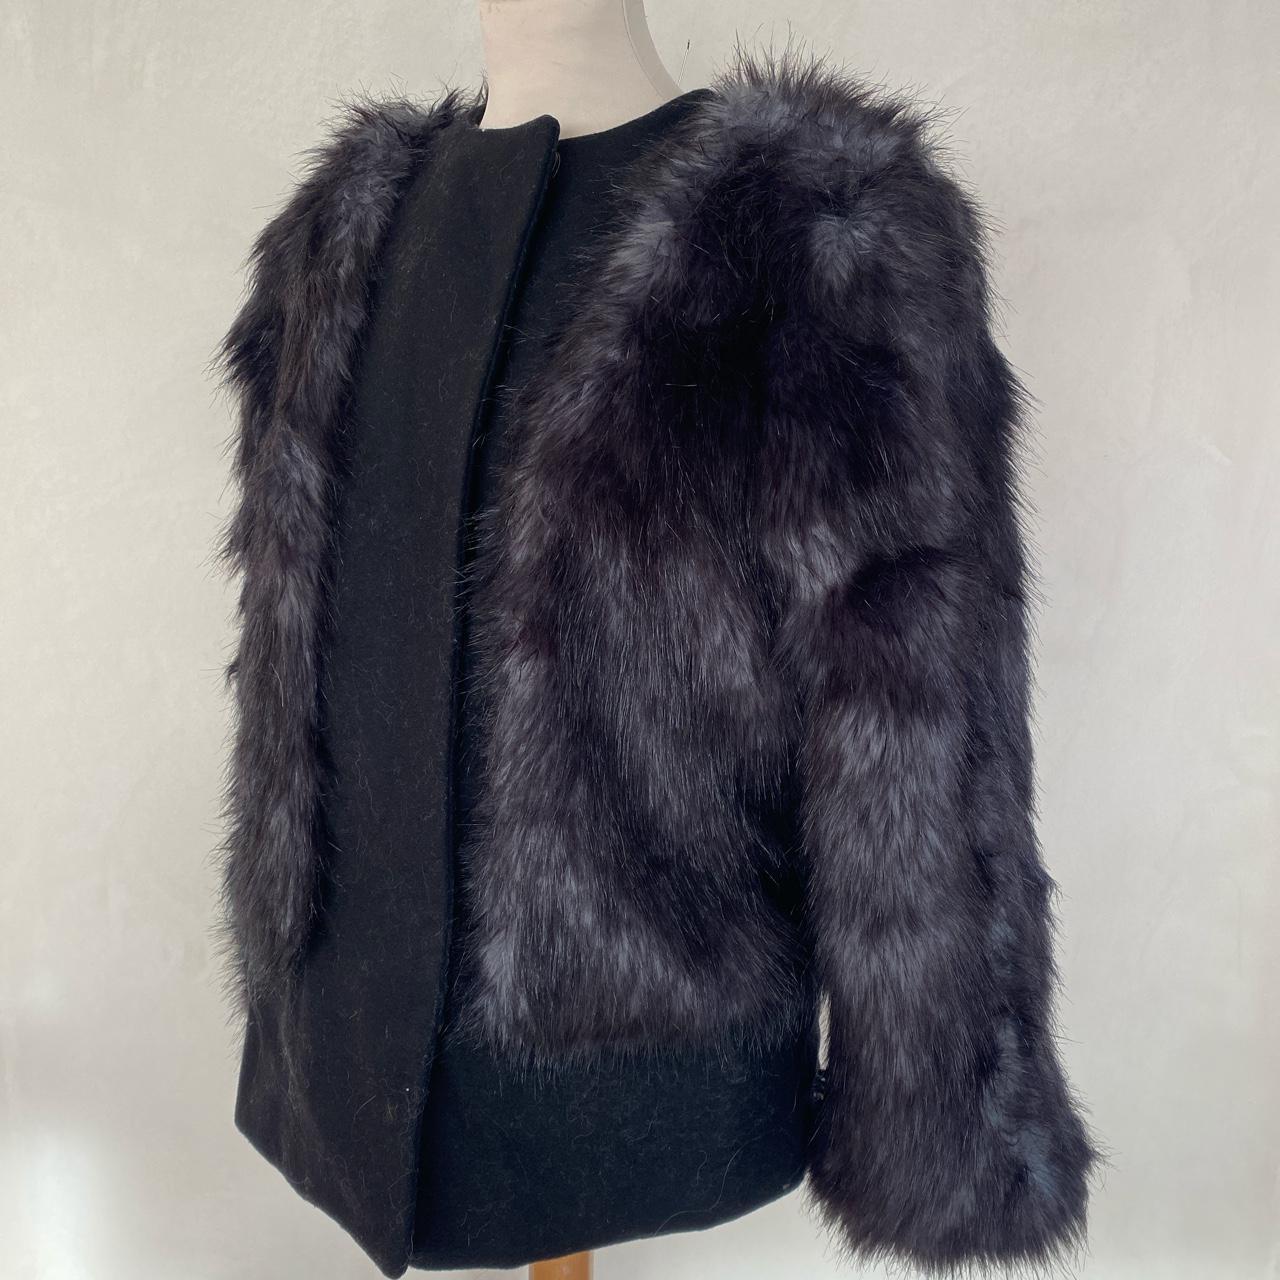 Filippa K faux fur short jacket in black & grey - Depop